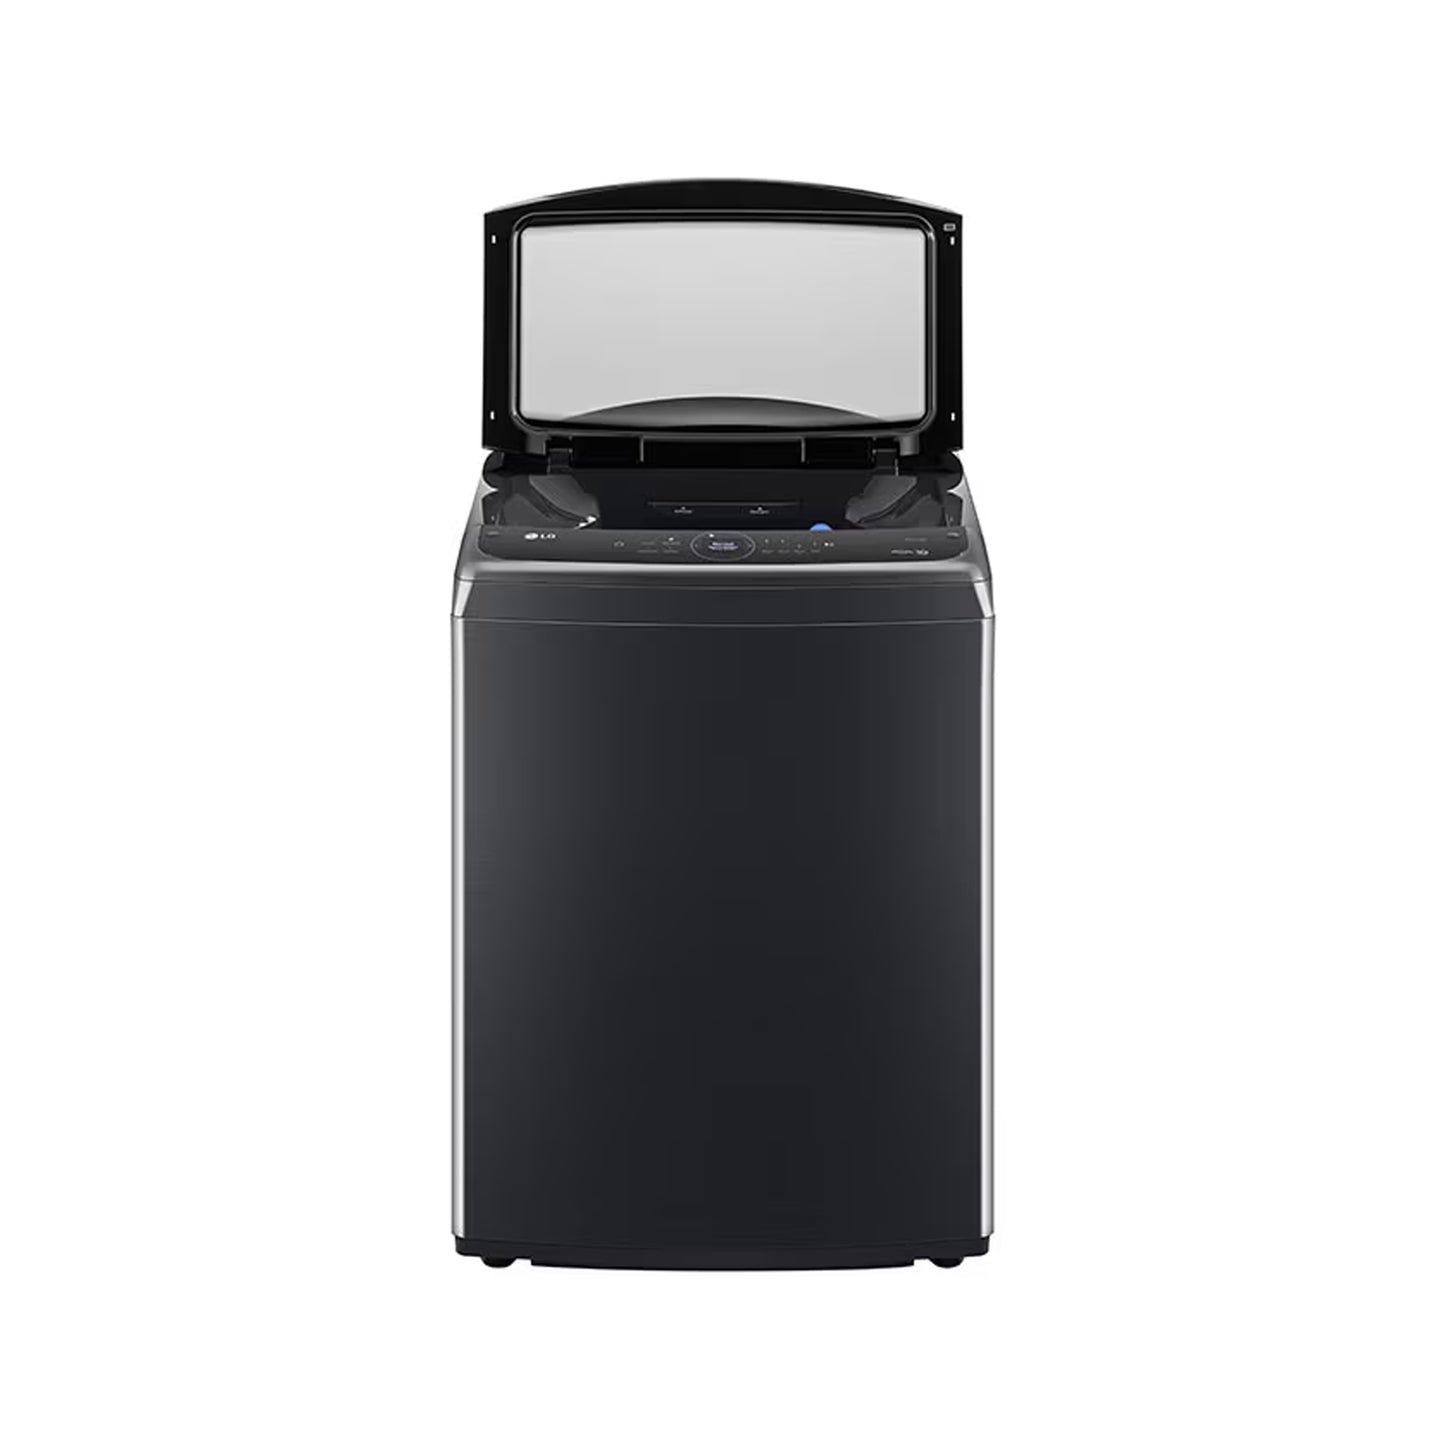 LG 24kg Black Top Load Washing Machine - T24H9EFHSTP